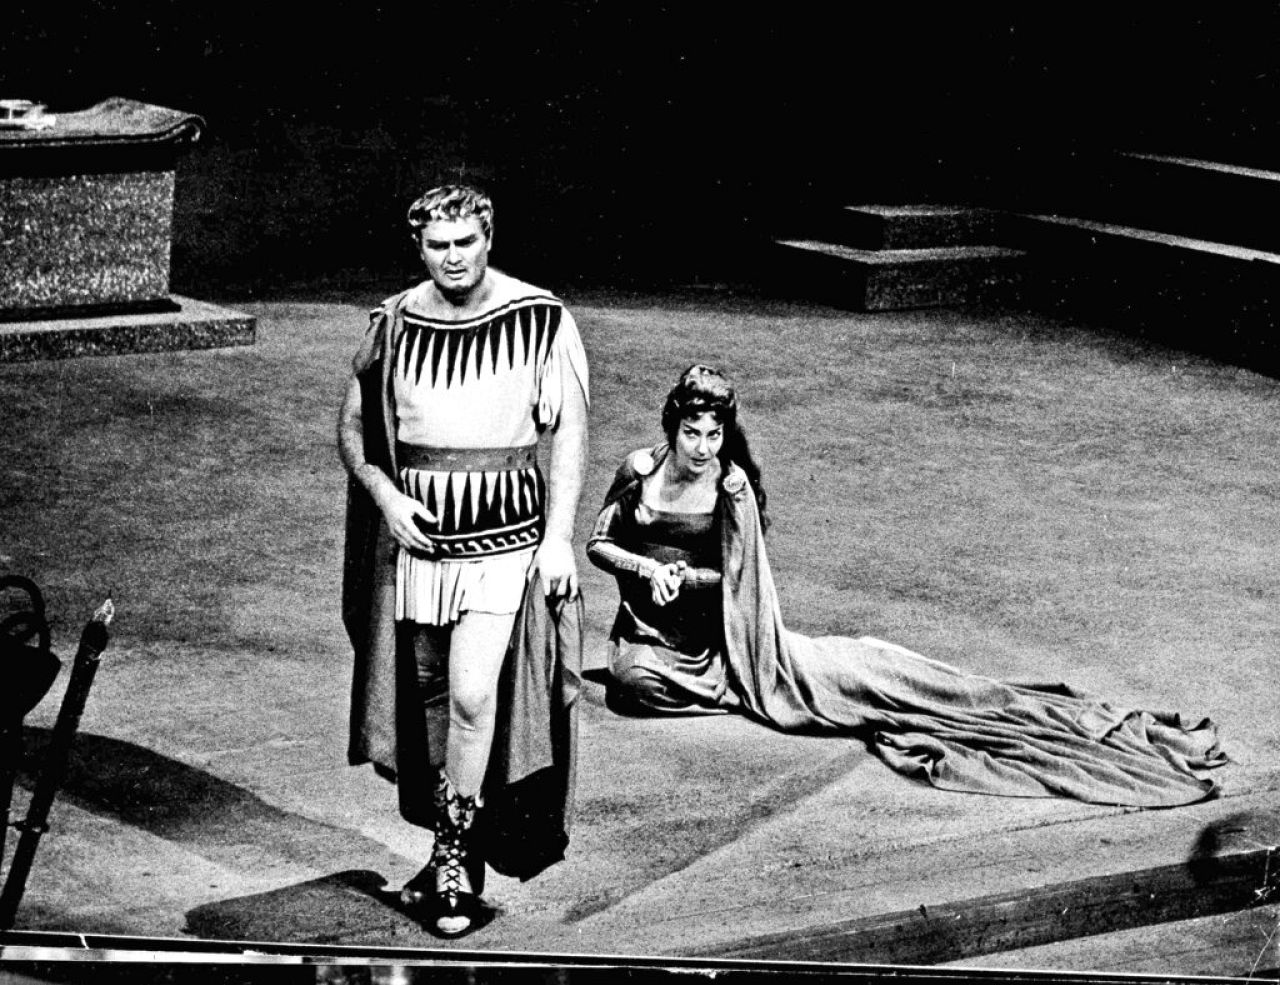 Słynna sopranistka Maria Callas pokazana podczas próby Cherubiniego "Medea" z kanadyjskim tenorem Jonem Vickersem w La Scali w Mediolanie, 11 grudnia 1961.